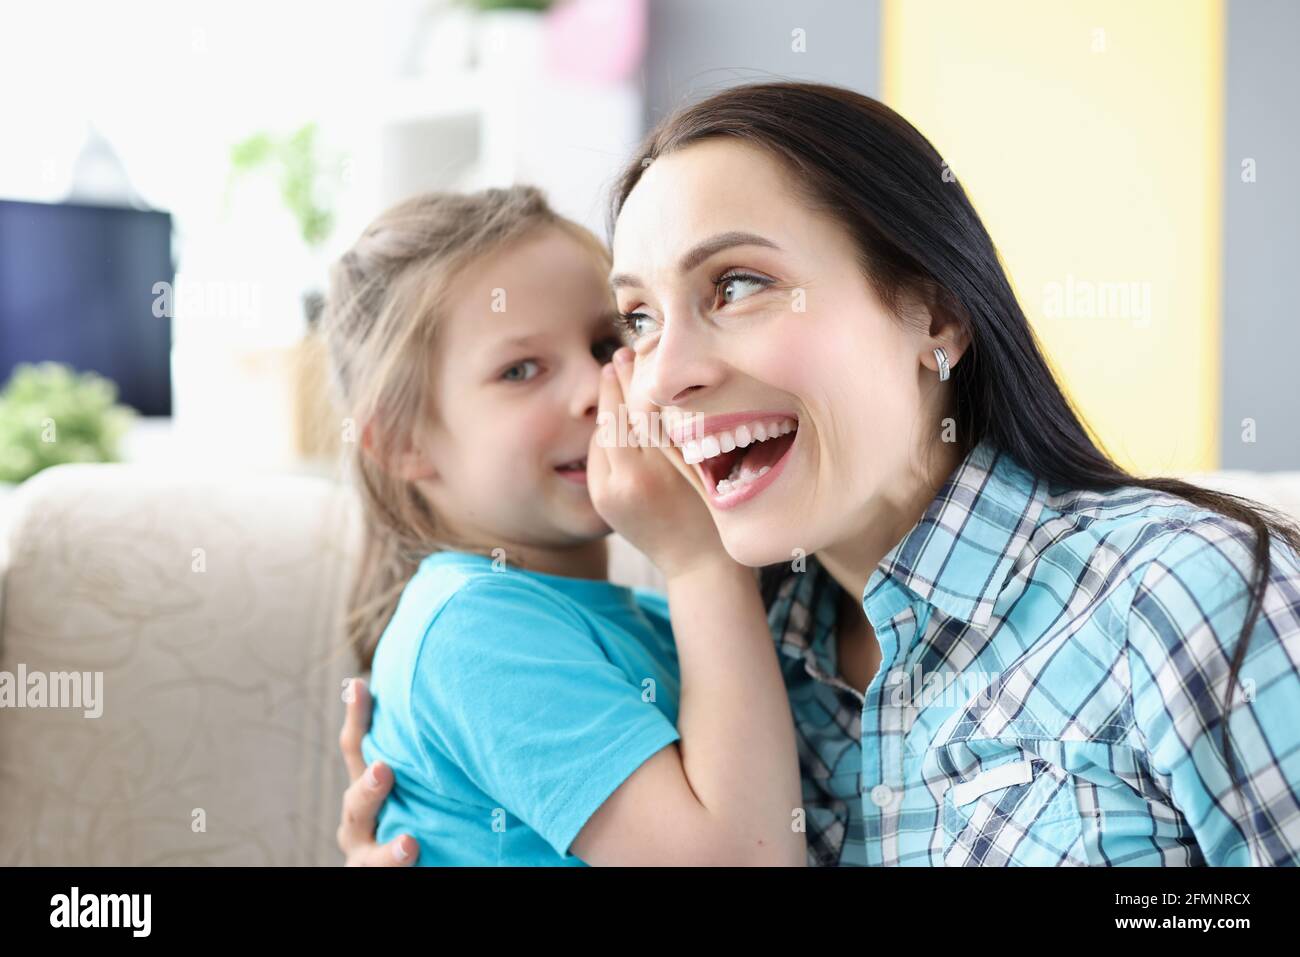 Little girl whispering secret to mom ear at home Stock Photo